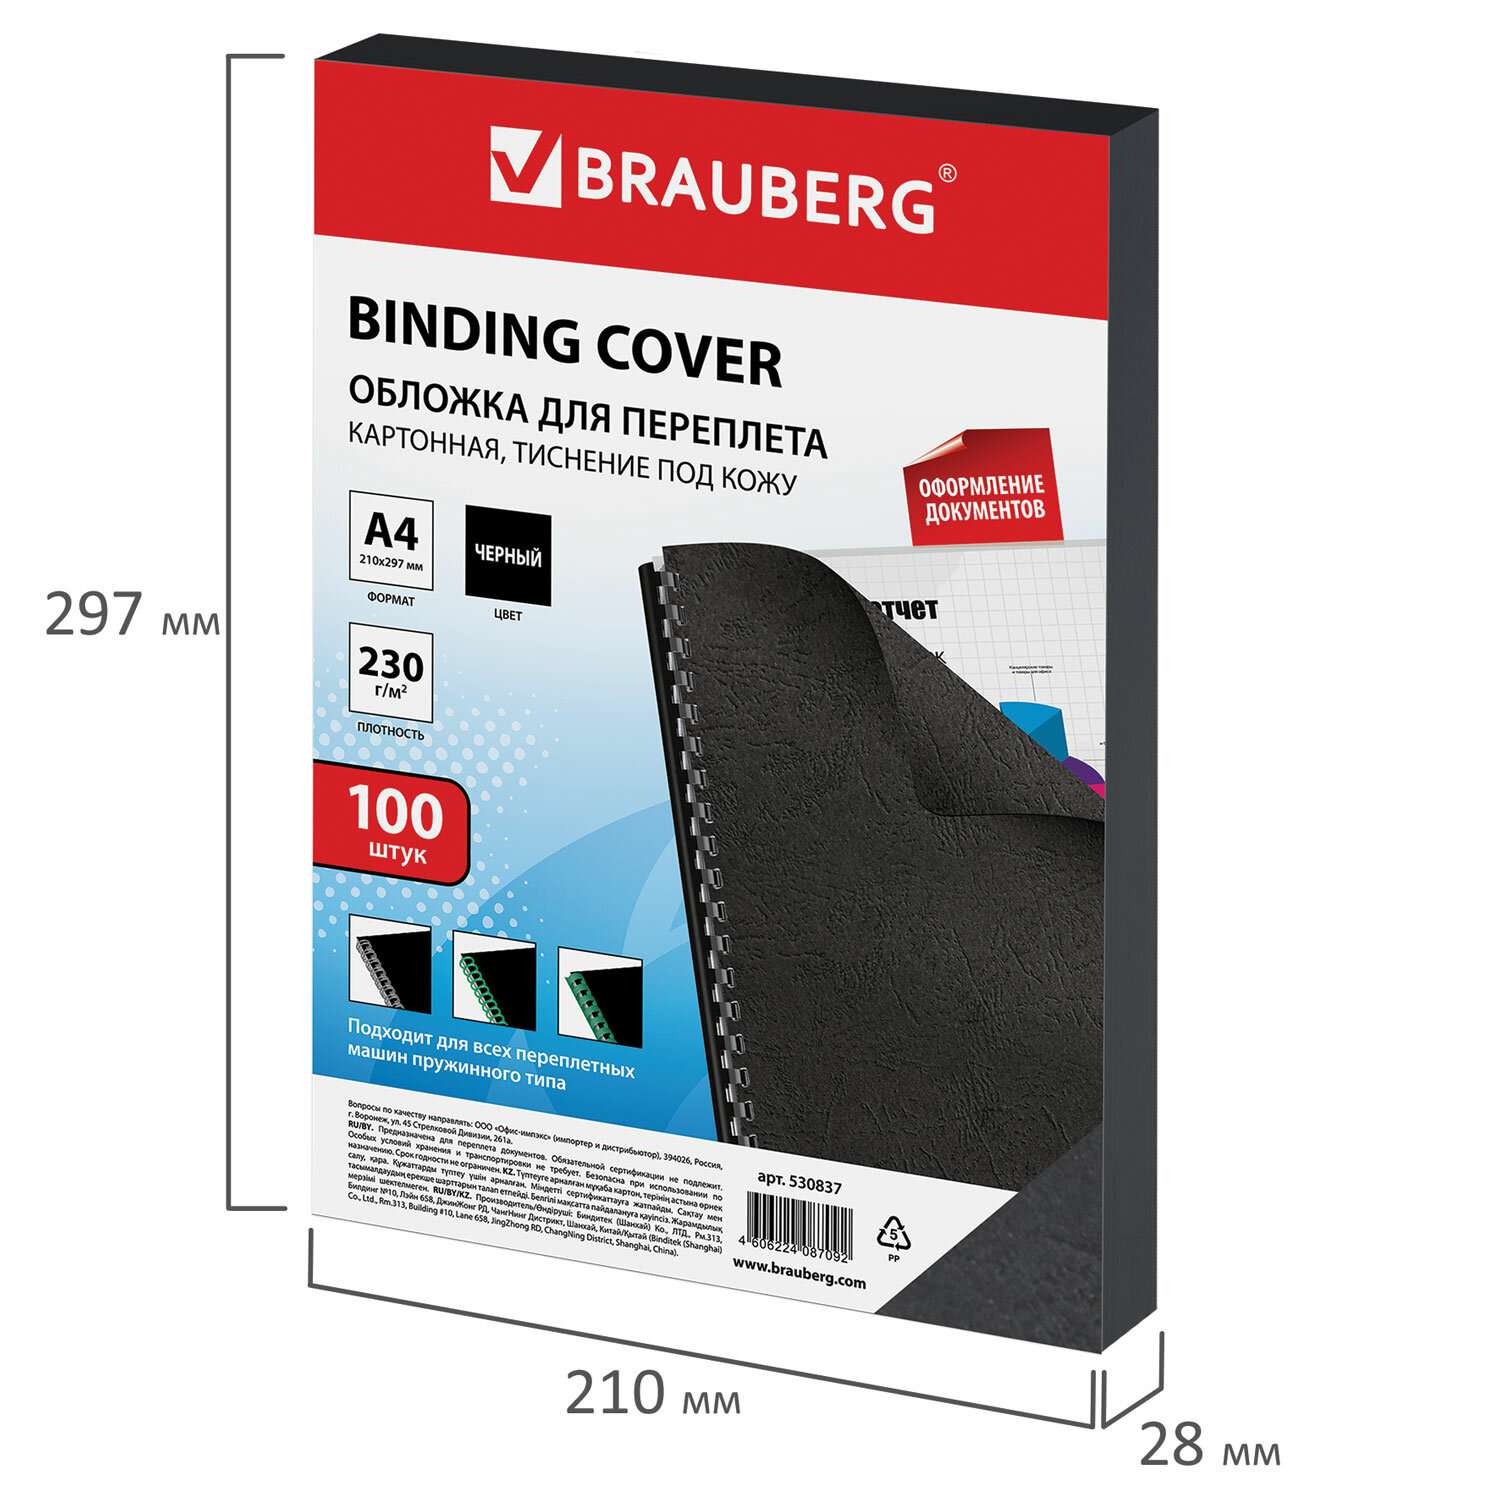 Обложки для переплета Brauberg картонные А4 набор 100 штук тиснение под кожу черные - фото 7